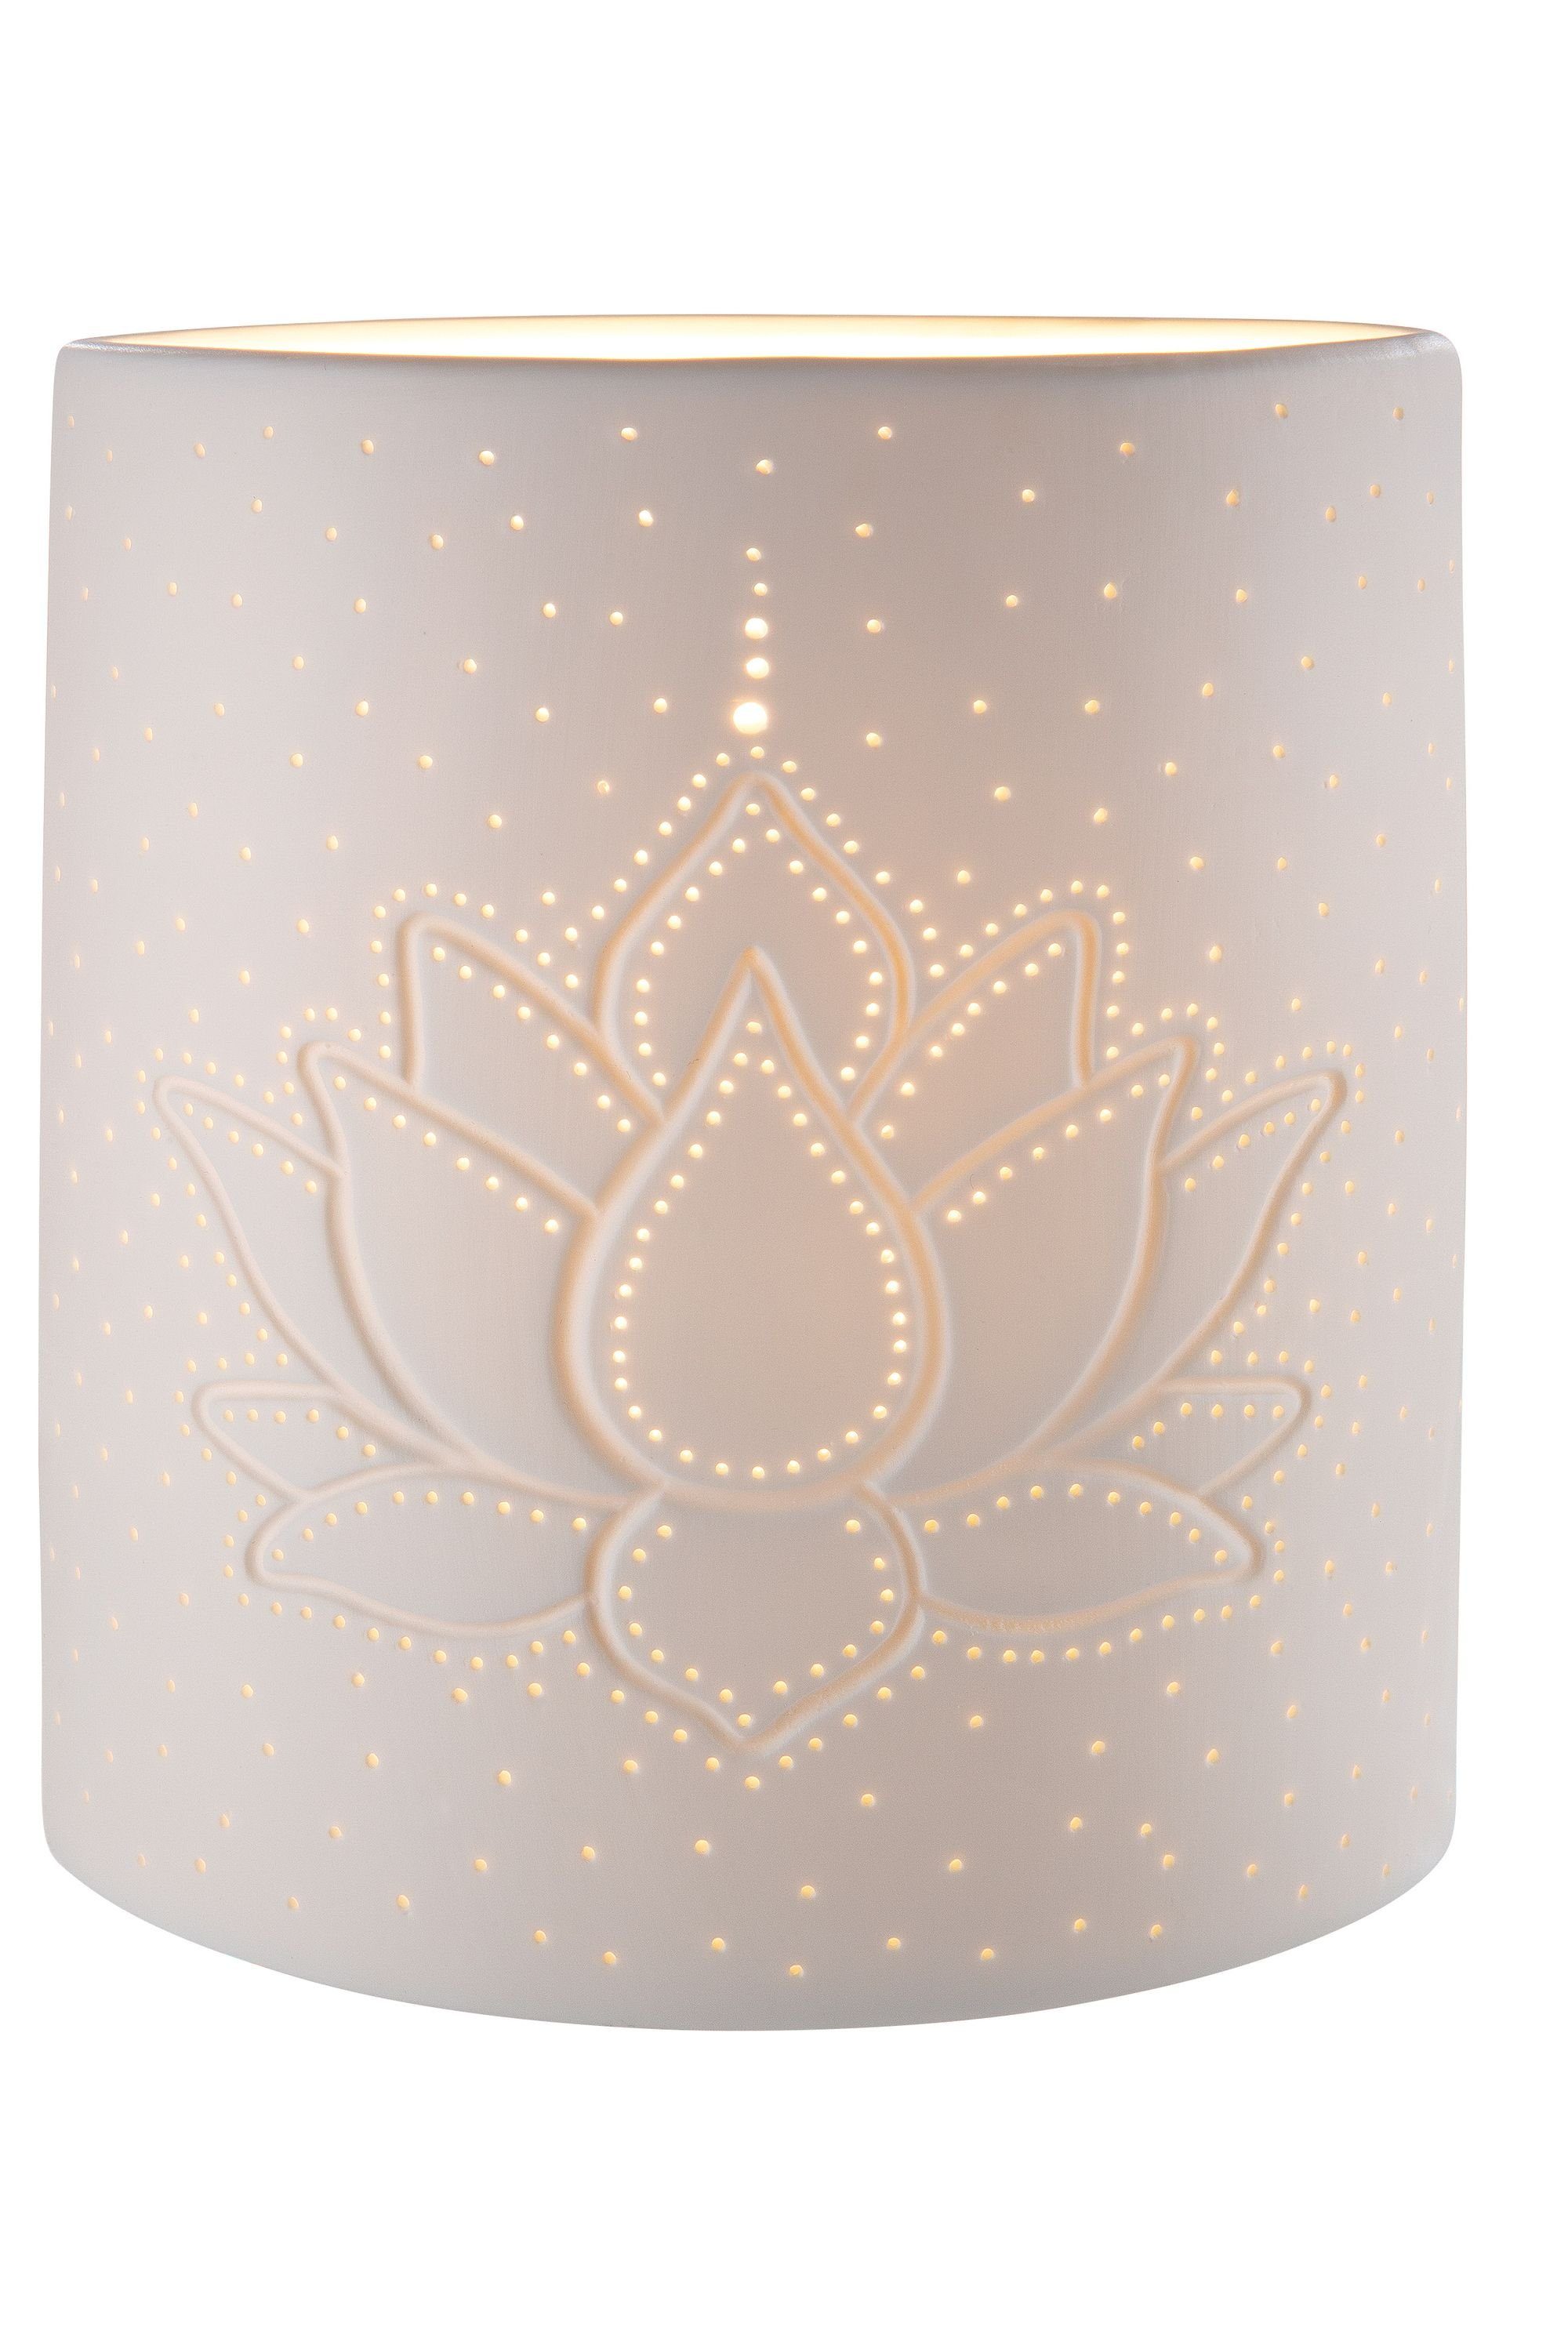 GILDE Tischleuchte GILDE Lampe Lotus - weiß - H. 20cm x B. 17cm